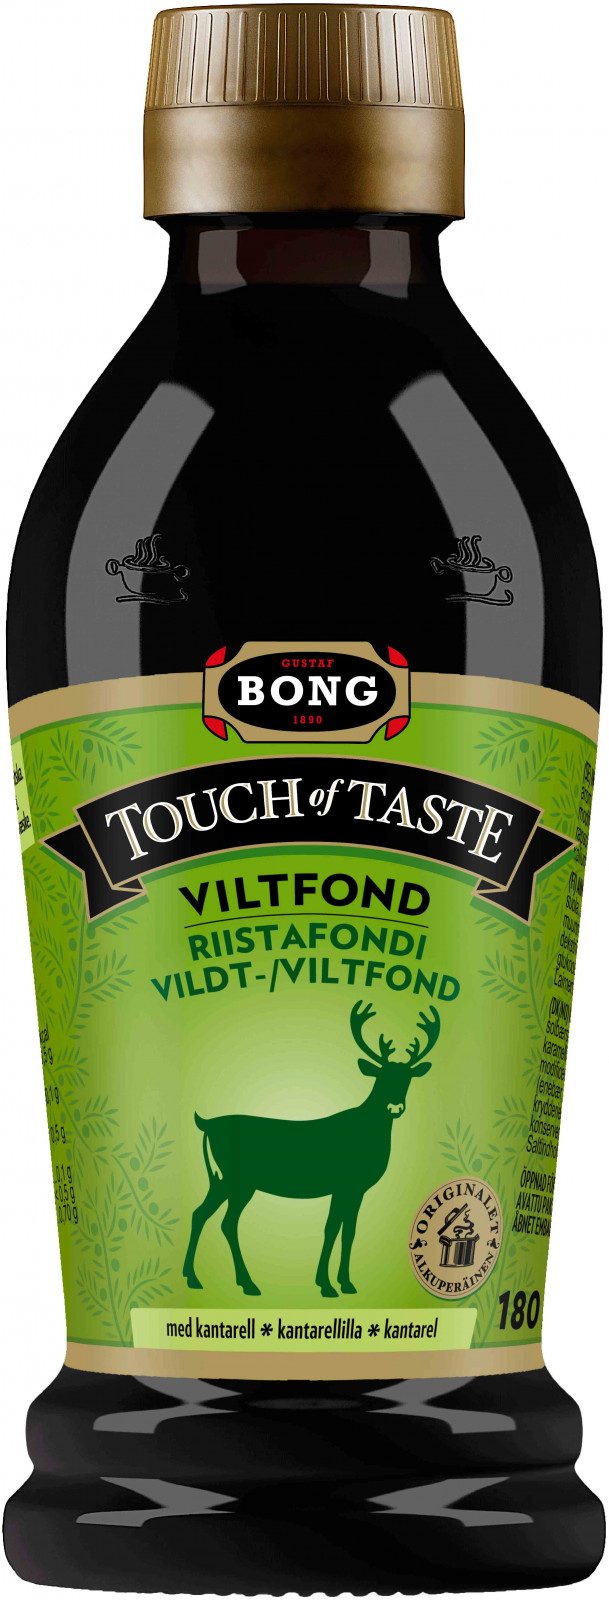 Bong touch of taste - Viltfond med kantarell